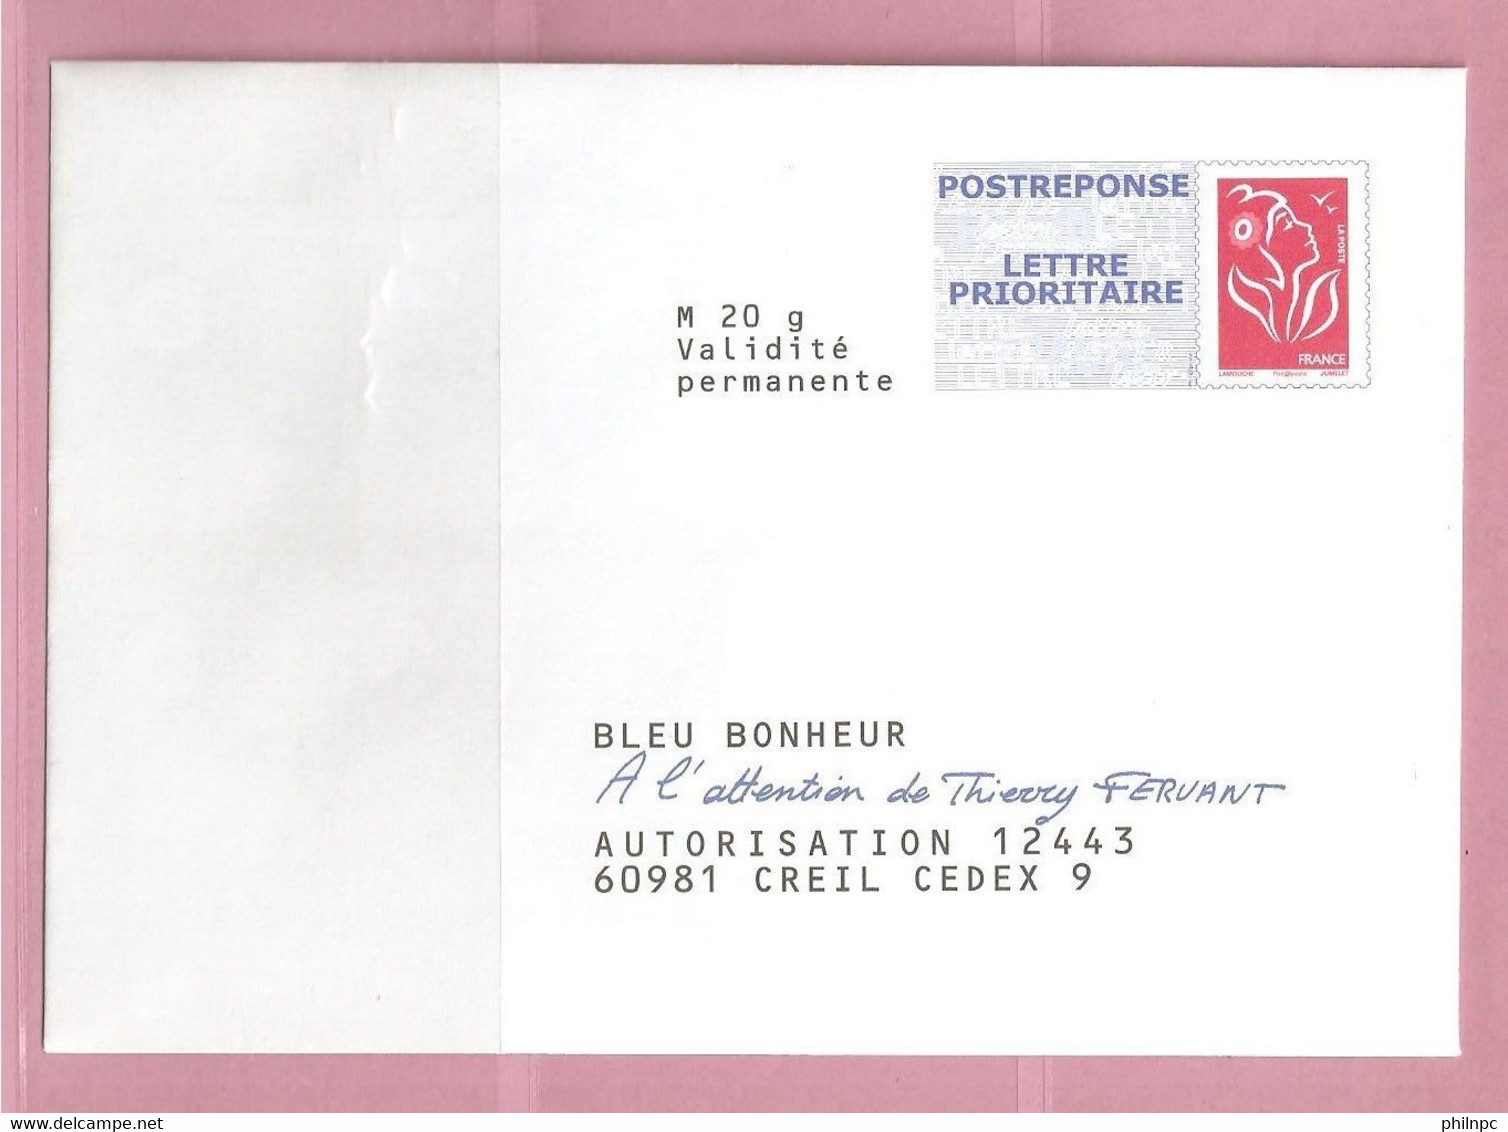 France, Prêt à Poster Réponse, 3734A, Postréponse, Bleu Bonheur, Marianne De Lamouche - Prêts-à-poster:Answer/Lamouche